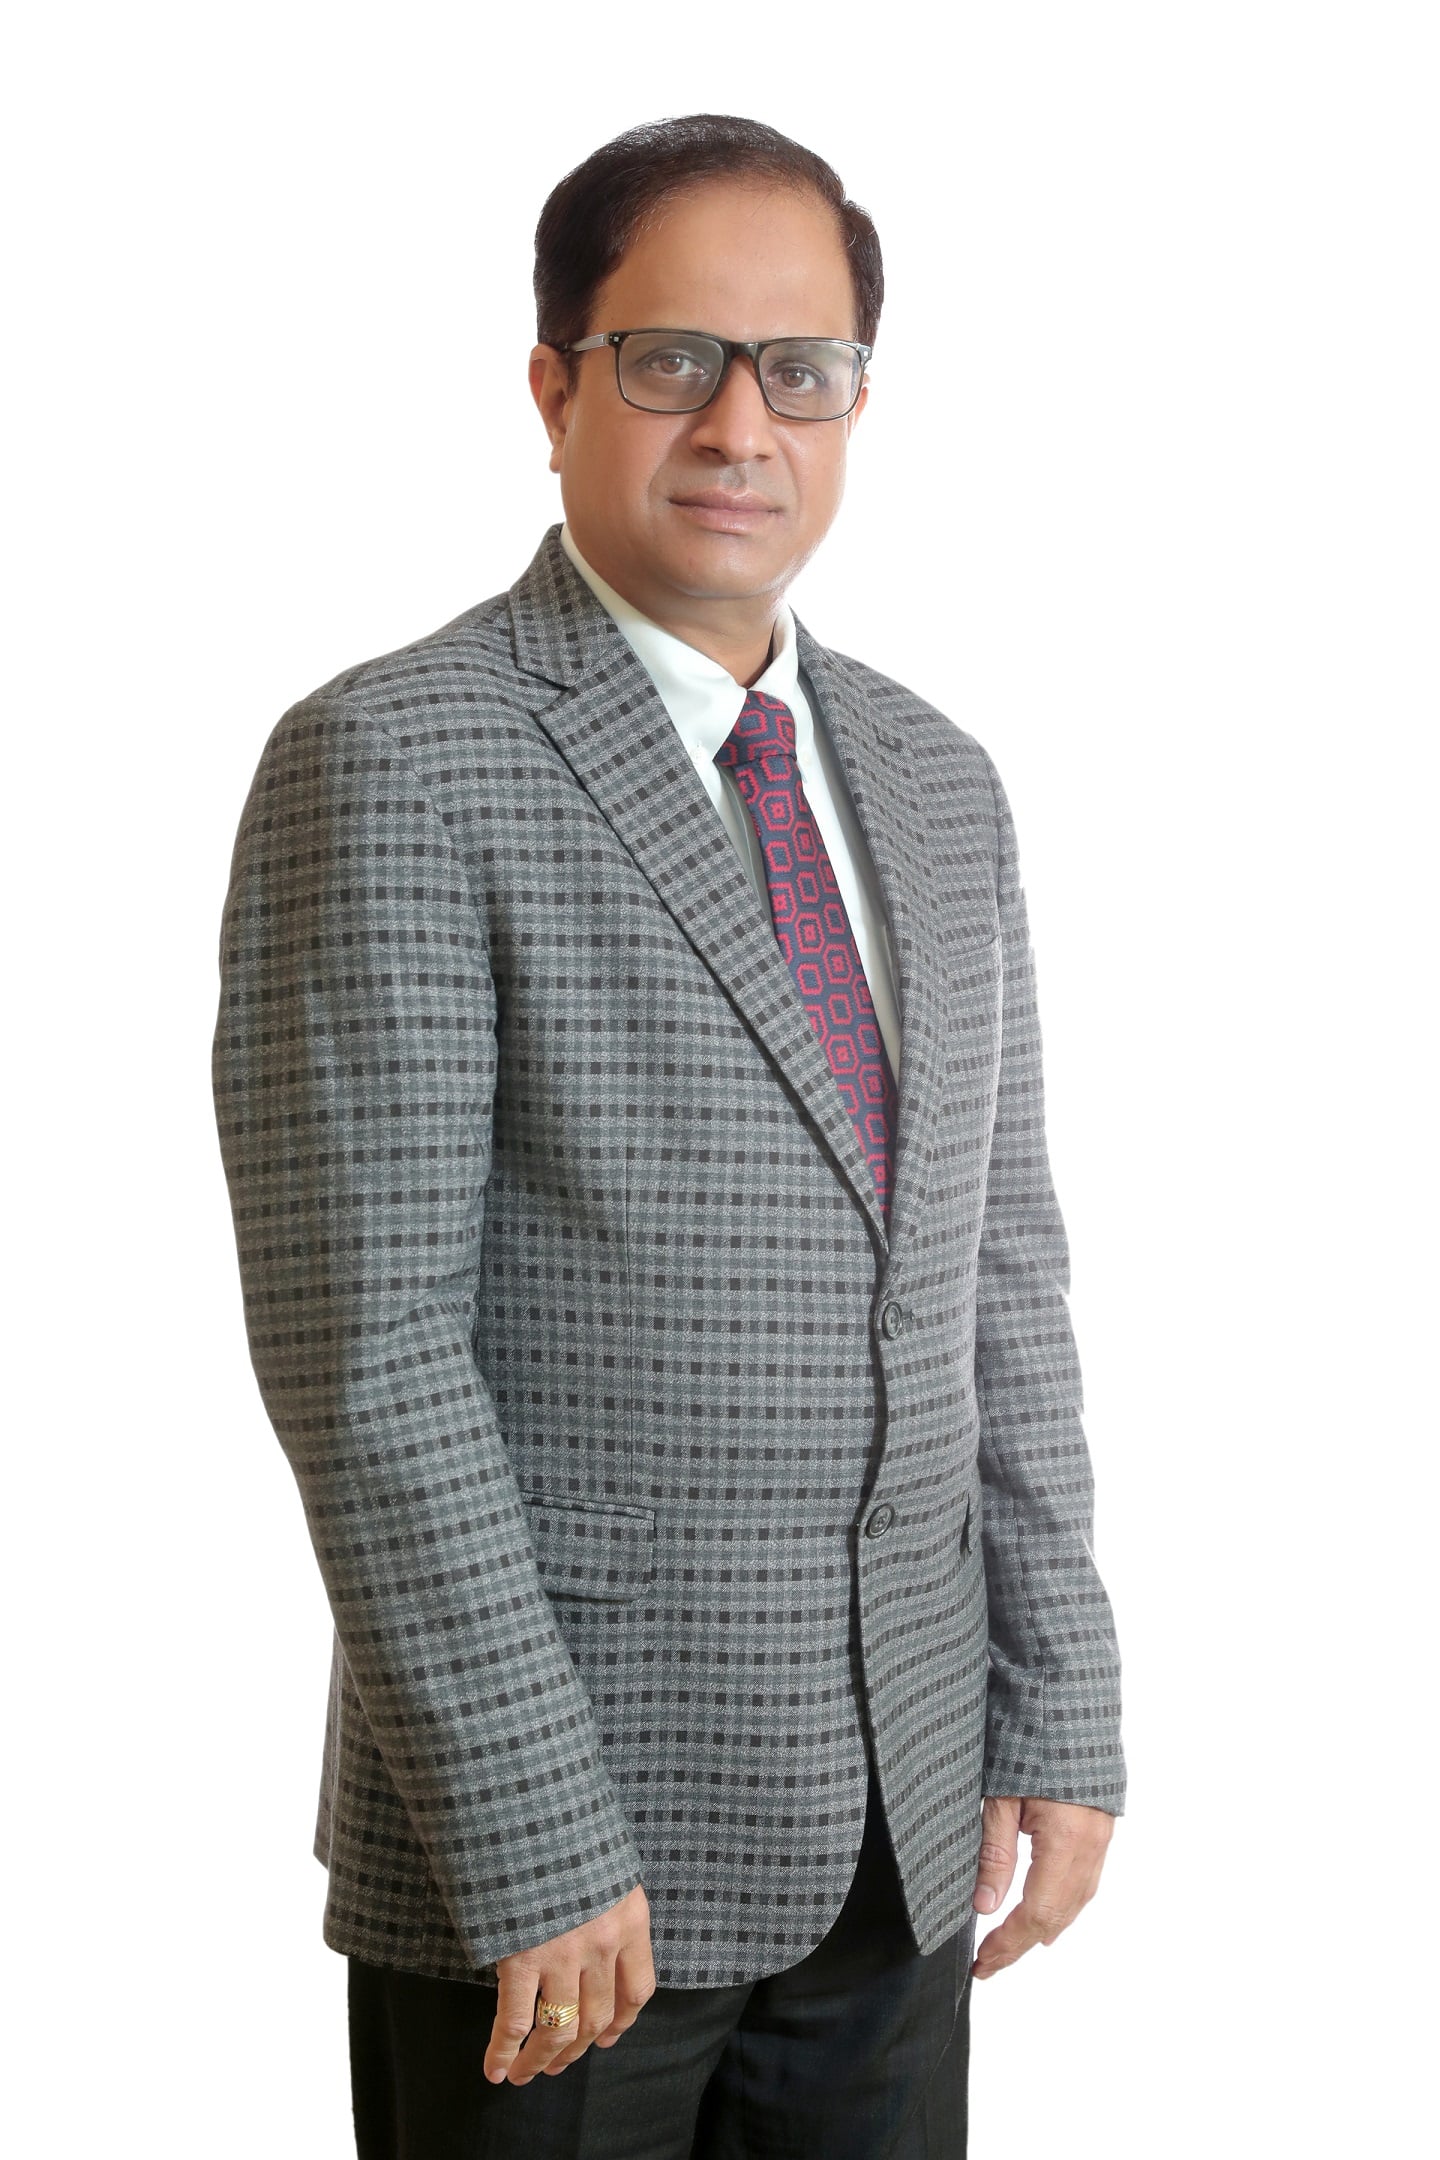 Dr. Ramanujam A Singarachari